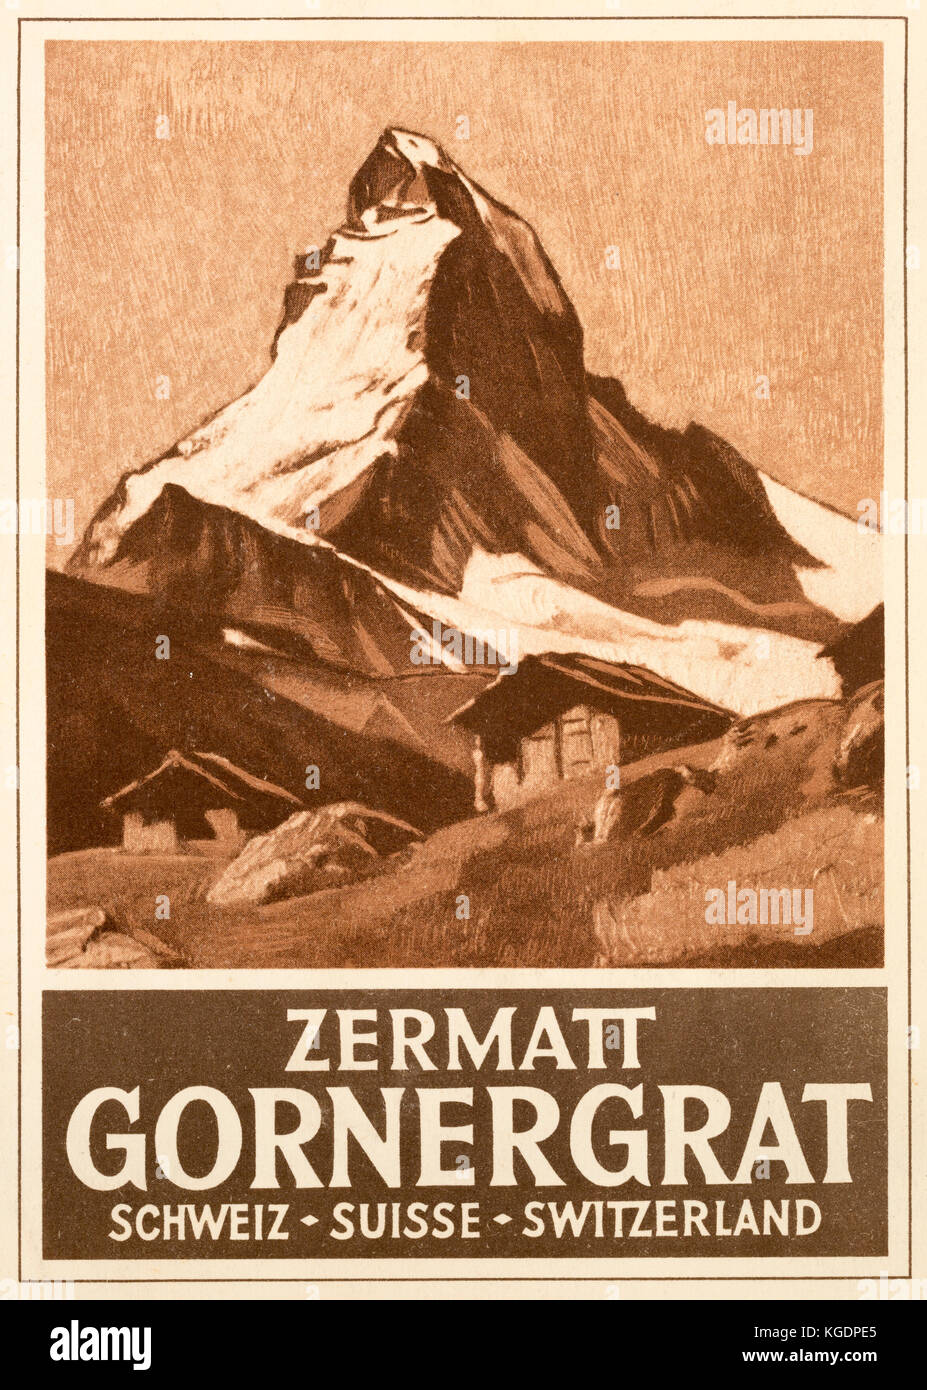 Parte anteriore del 1929 guida stampata per la Ferrovia Zermatt-Gornergrat a Brigue, Svizzera. Il dipinto sulla parte anteriore mostra il Cervino e cabine. Foto Stock